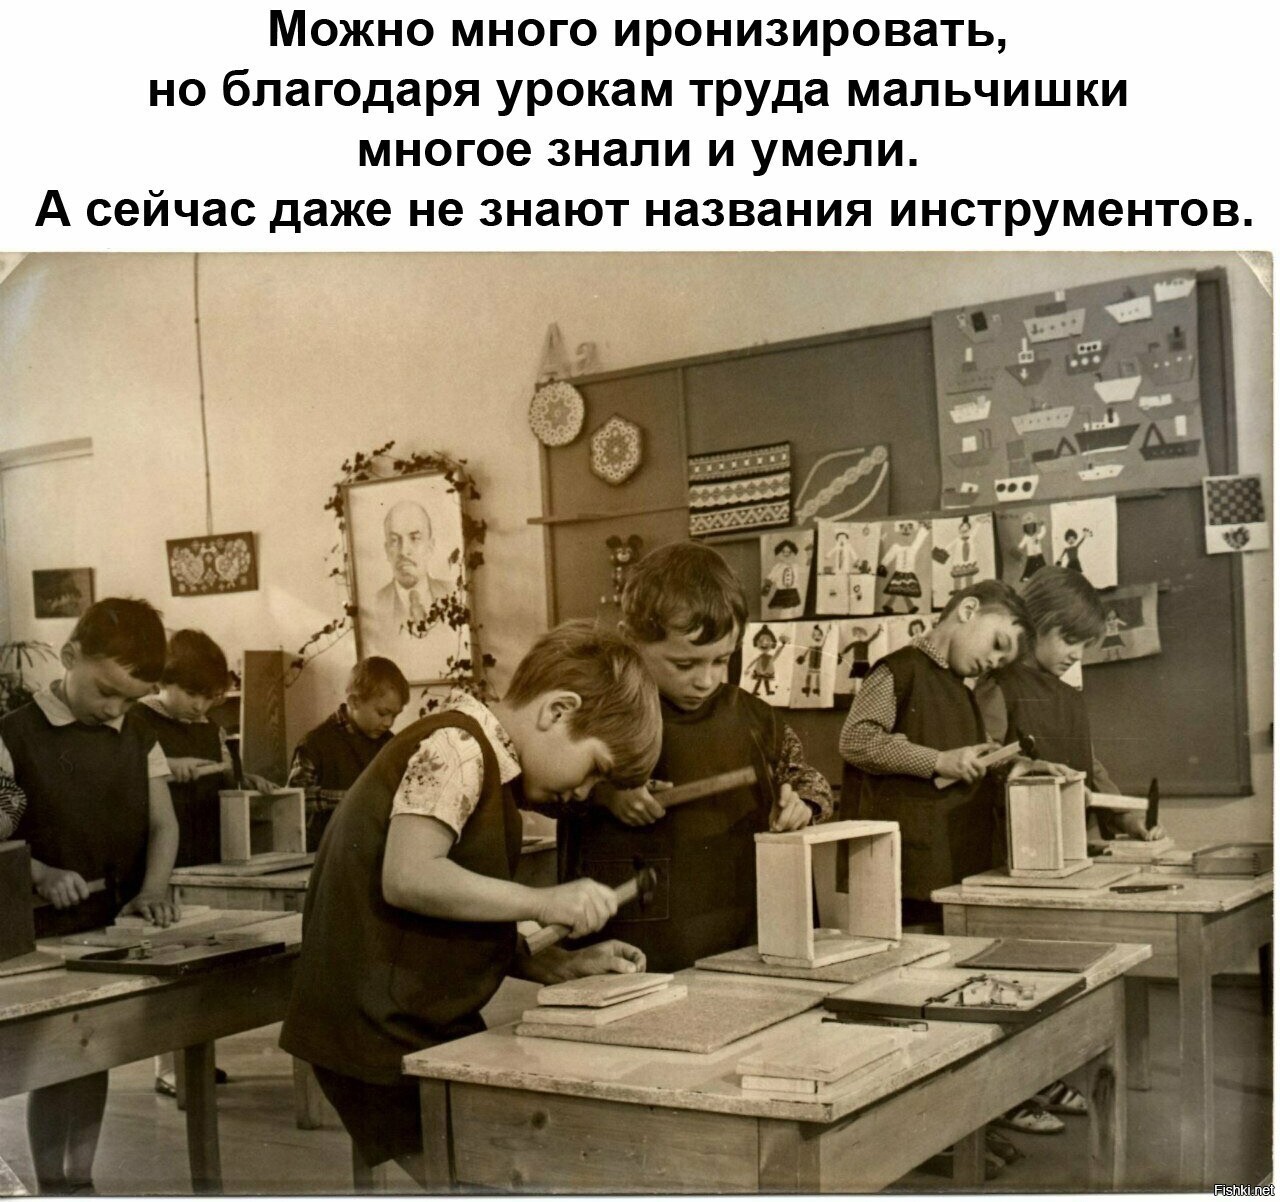 Уроки труда в СССР